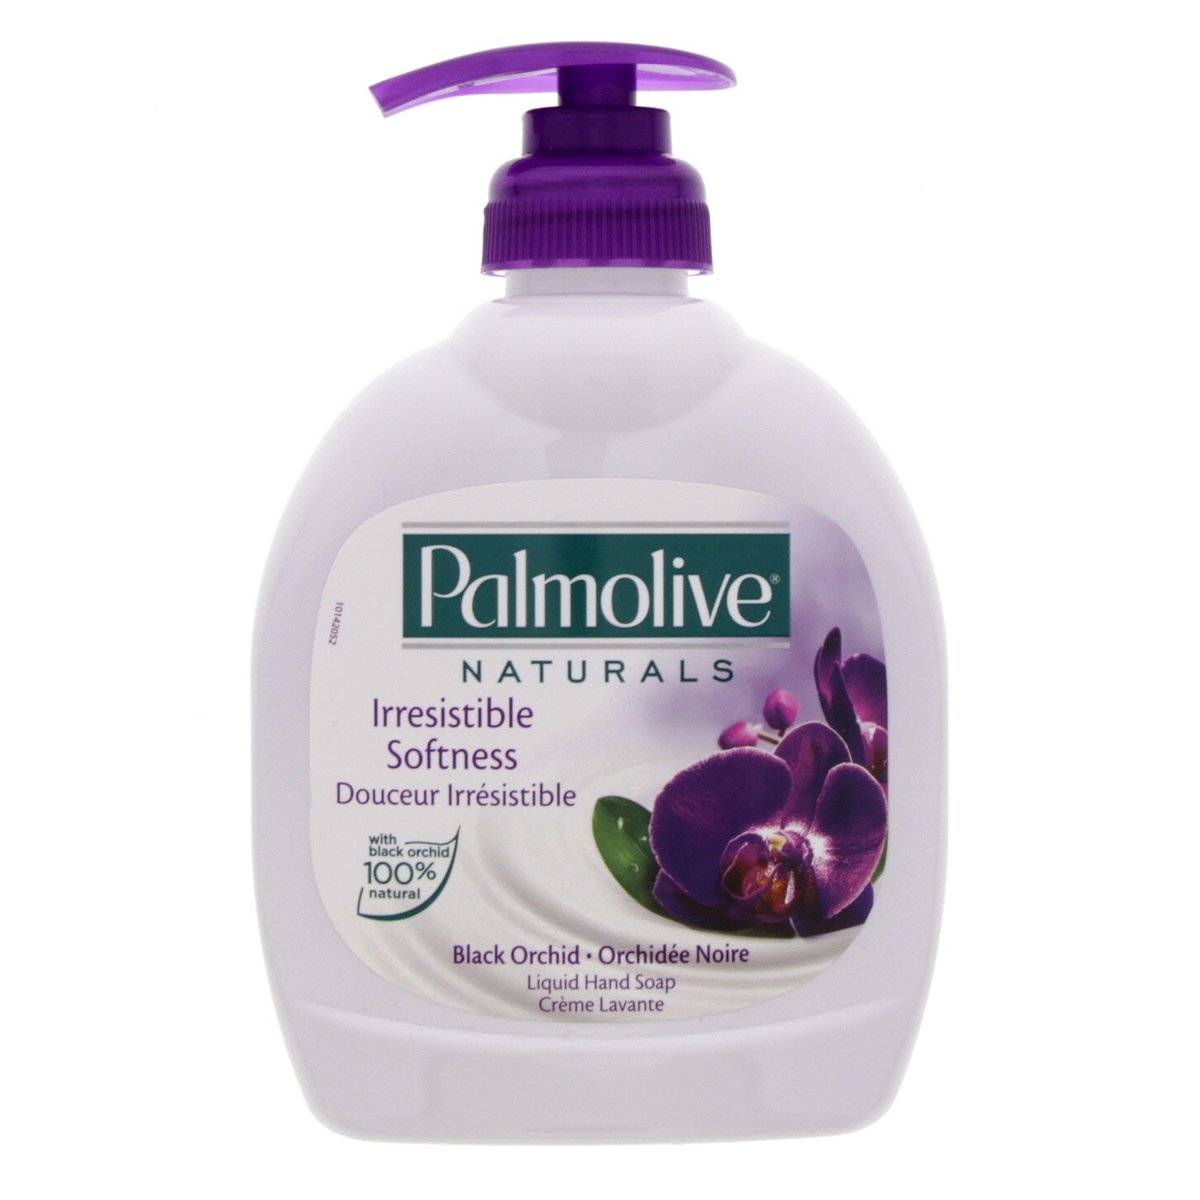 Palmolive Naturals Black Orchid Liquid Hand Soap 300 ml